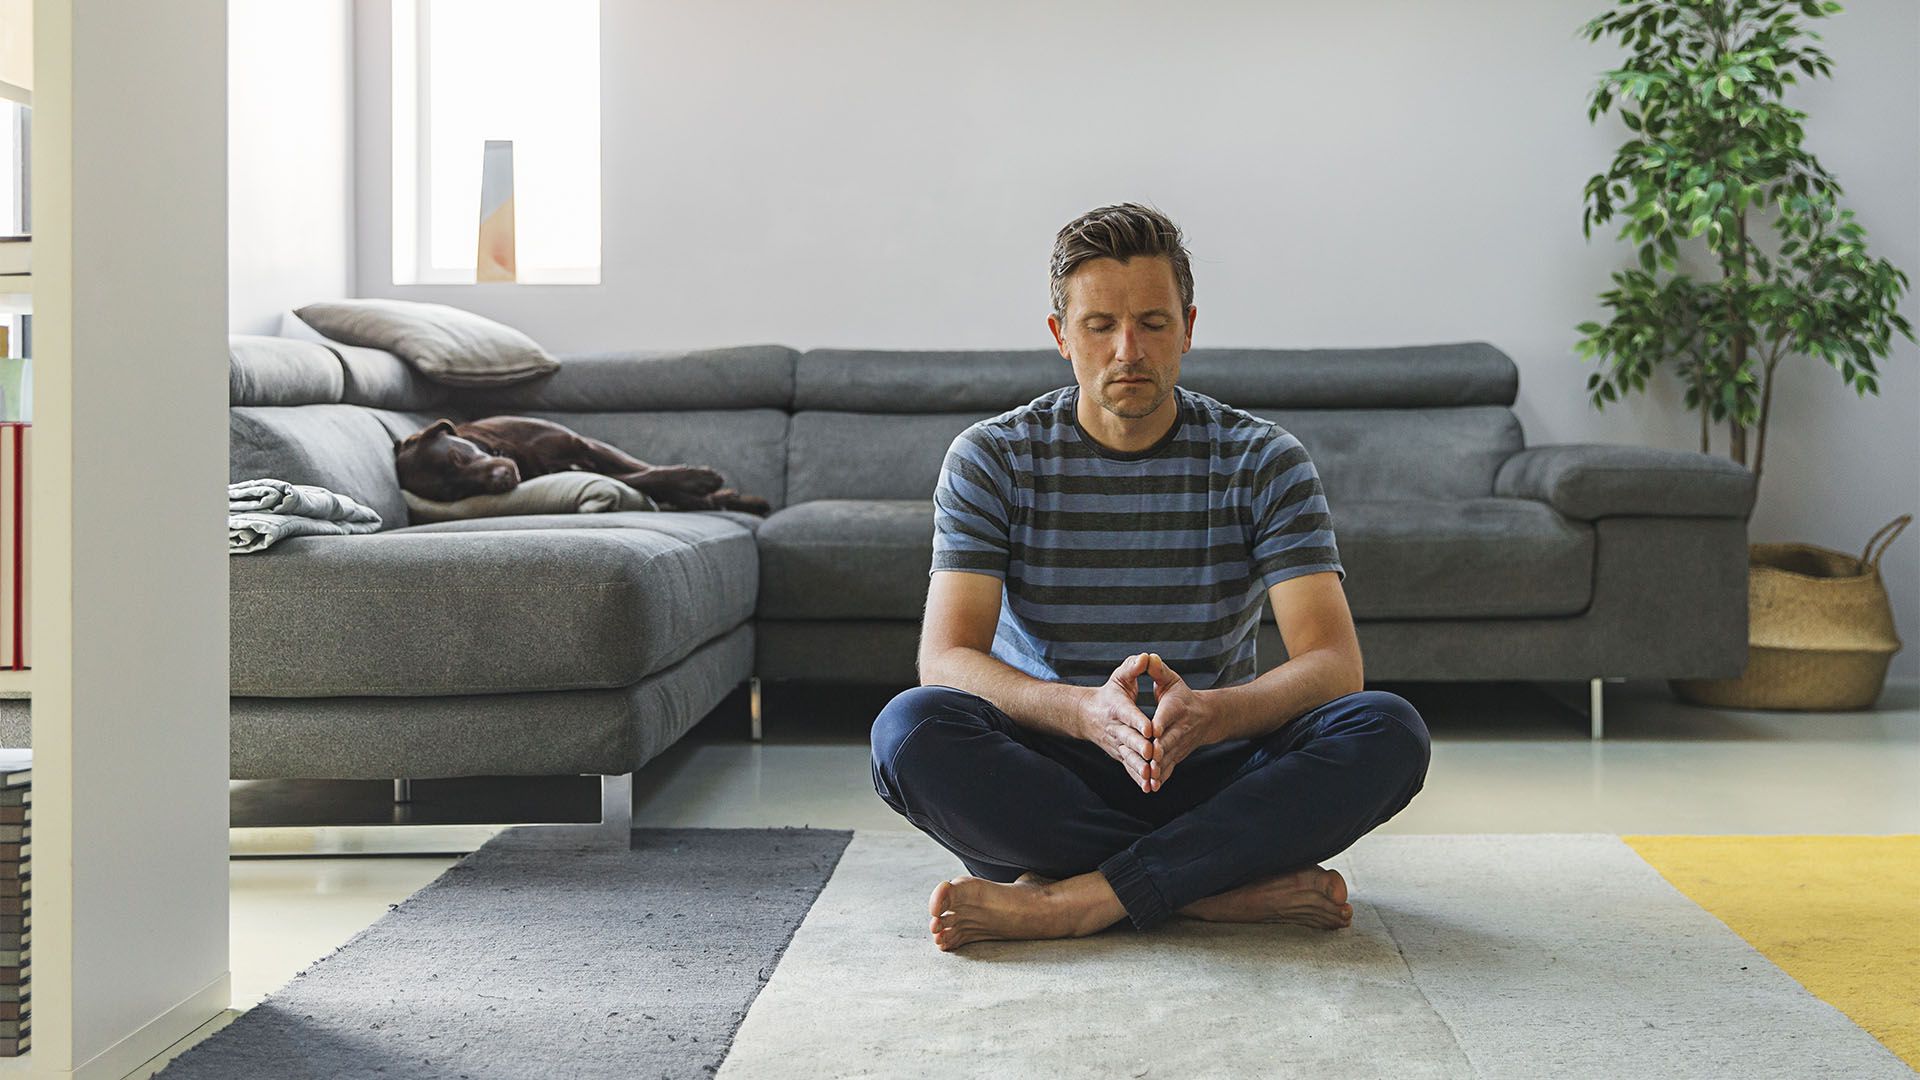 La práctica de la meditación reduce la frecuencia de los pensamientos negativos (Getty)